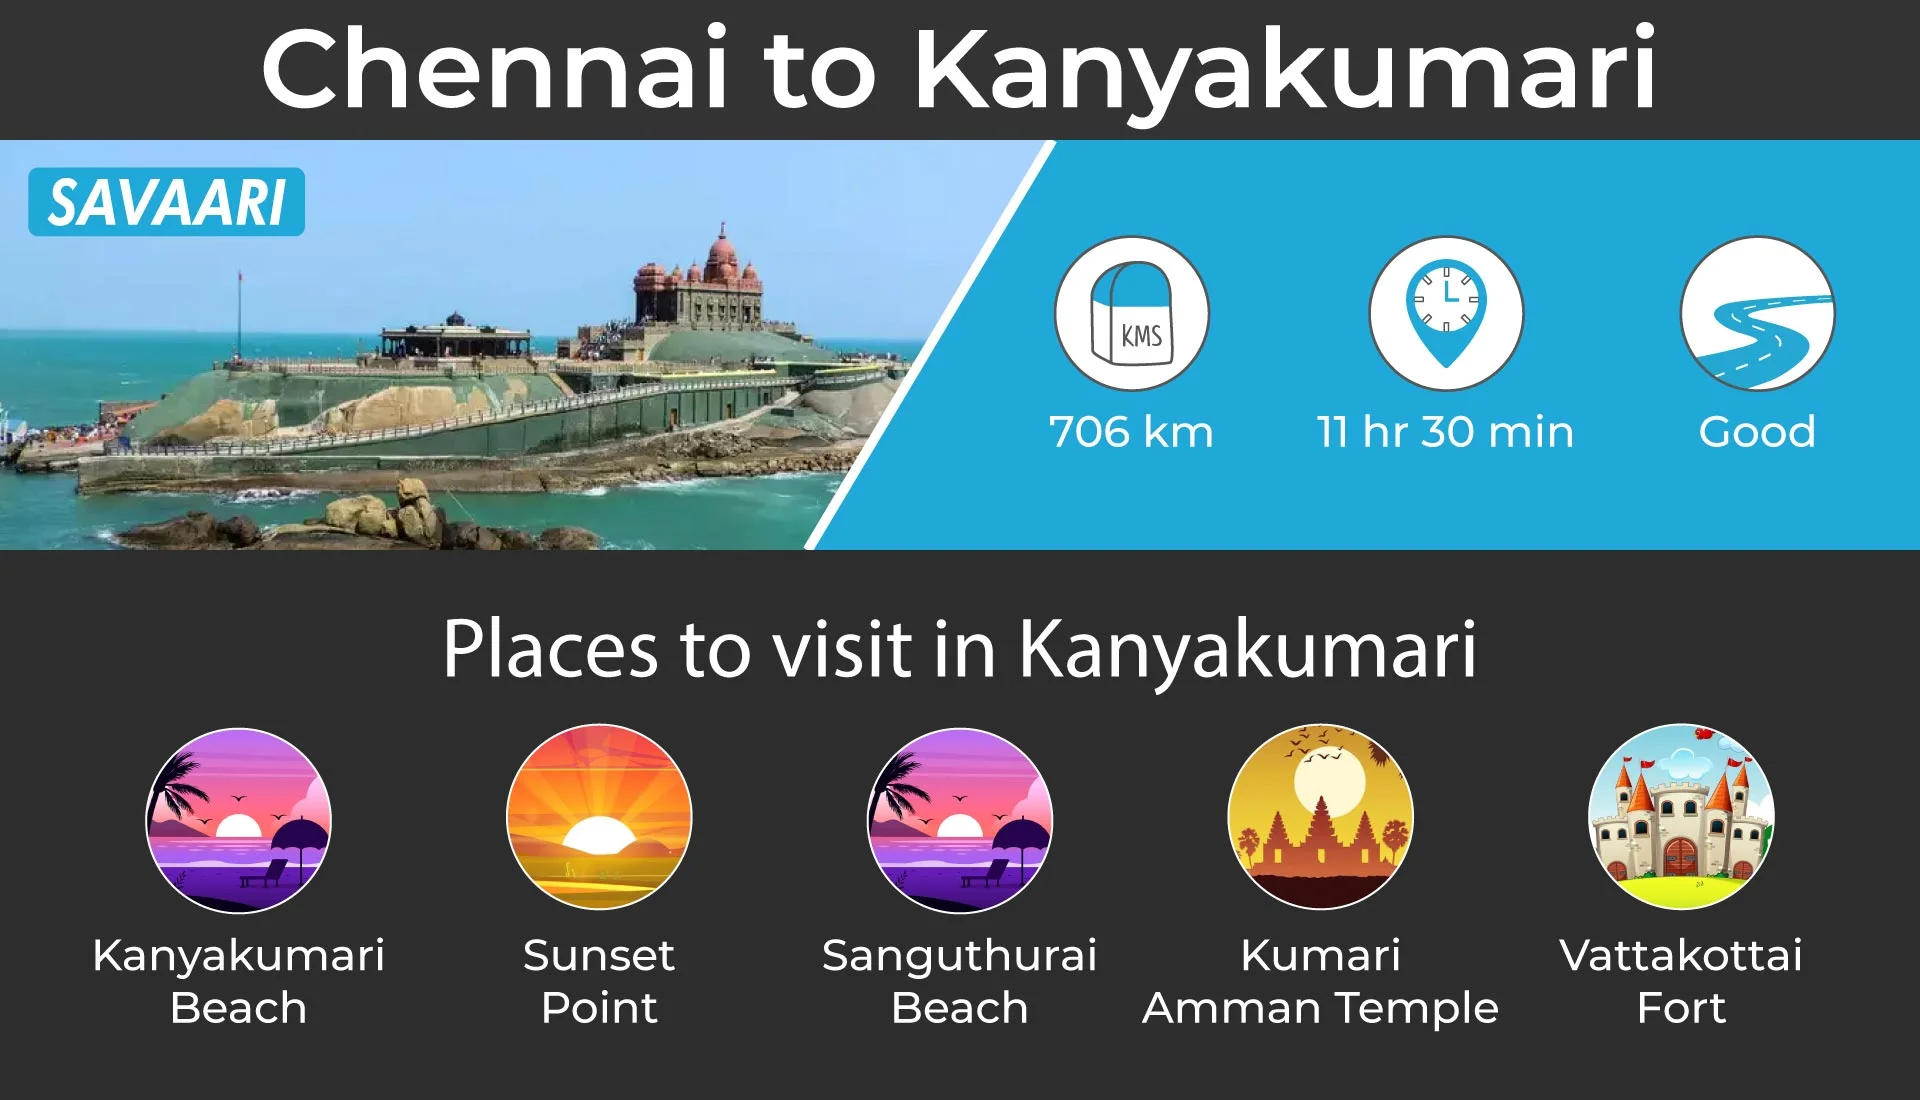 Chennai to Kanyakumari must do road trips